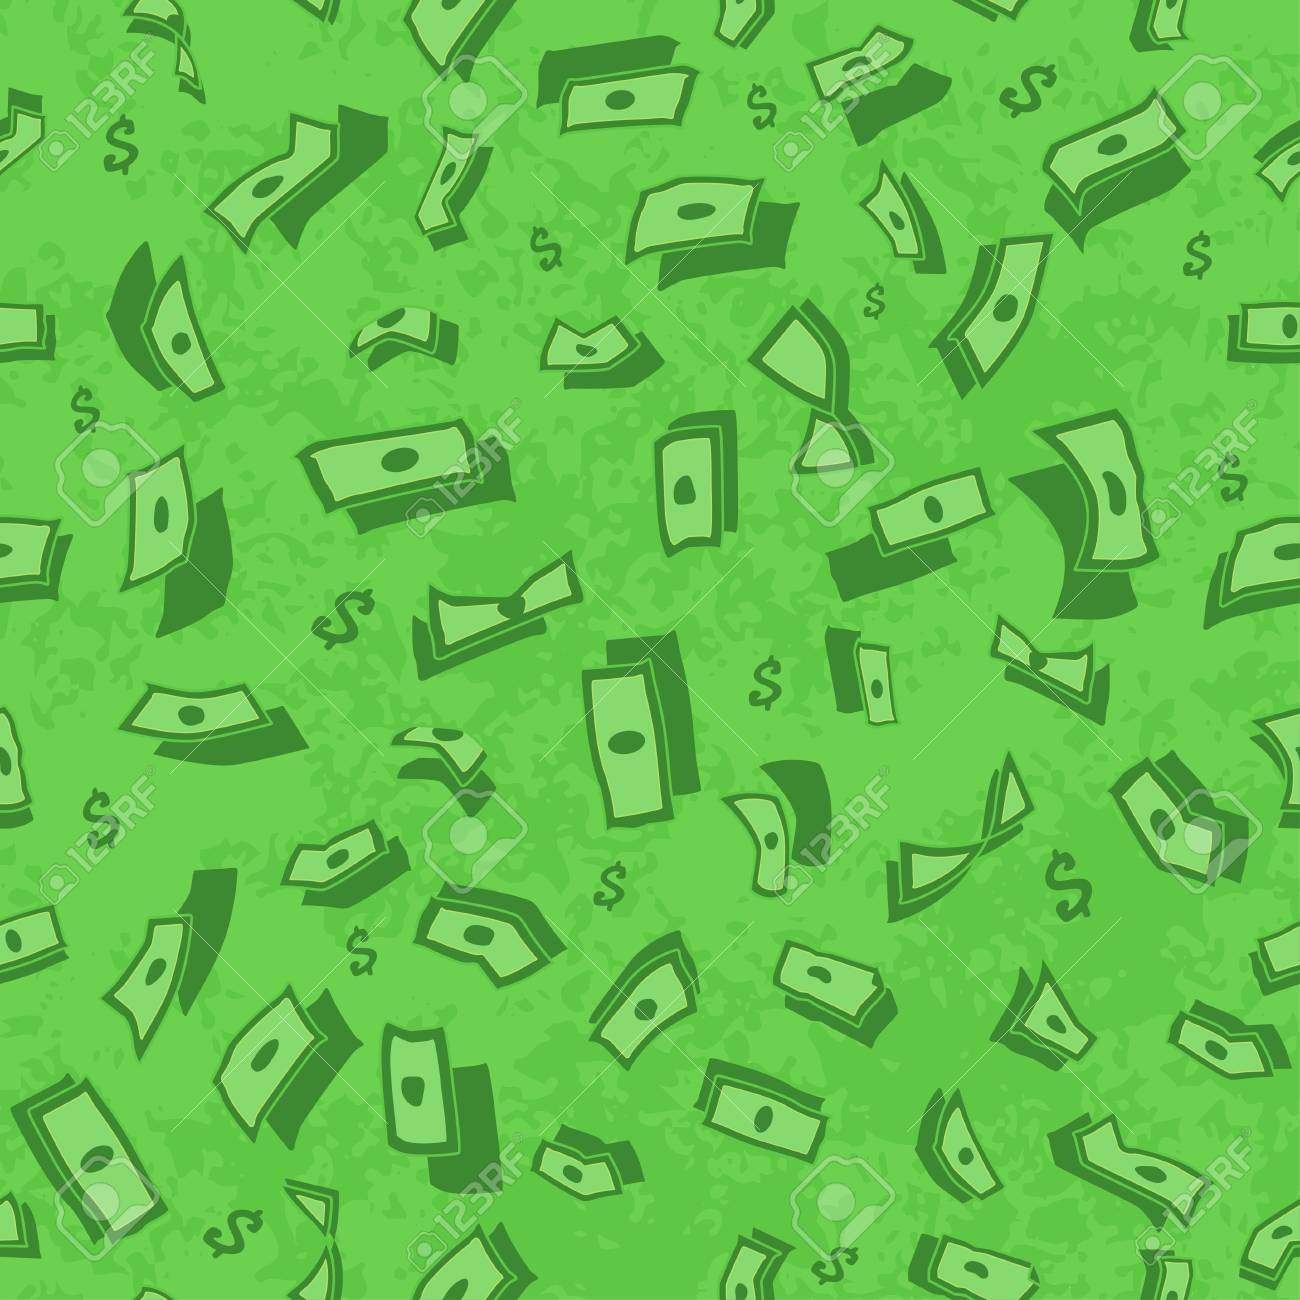 Деньги на зеленом фоне